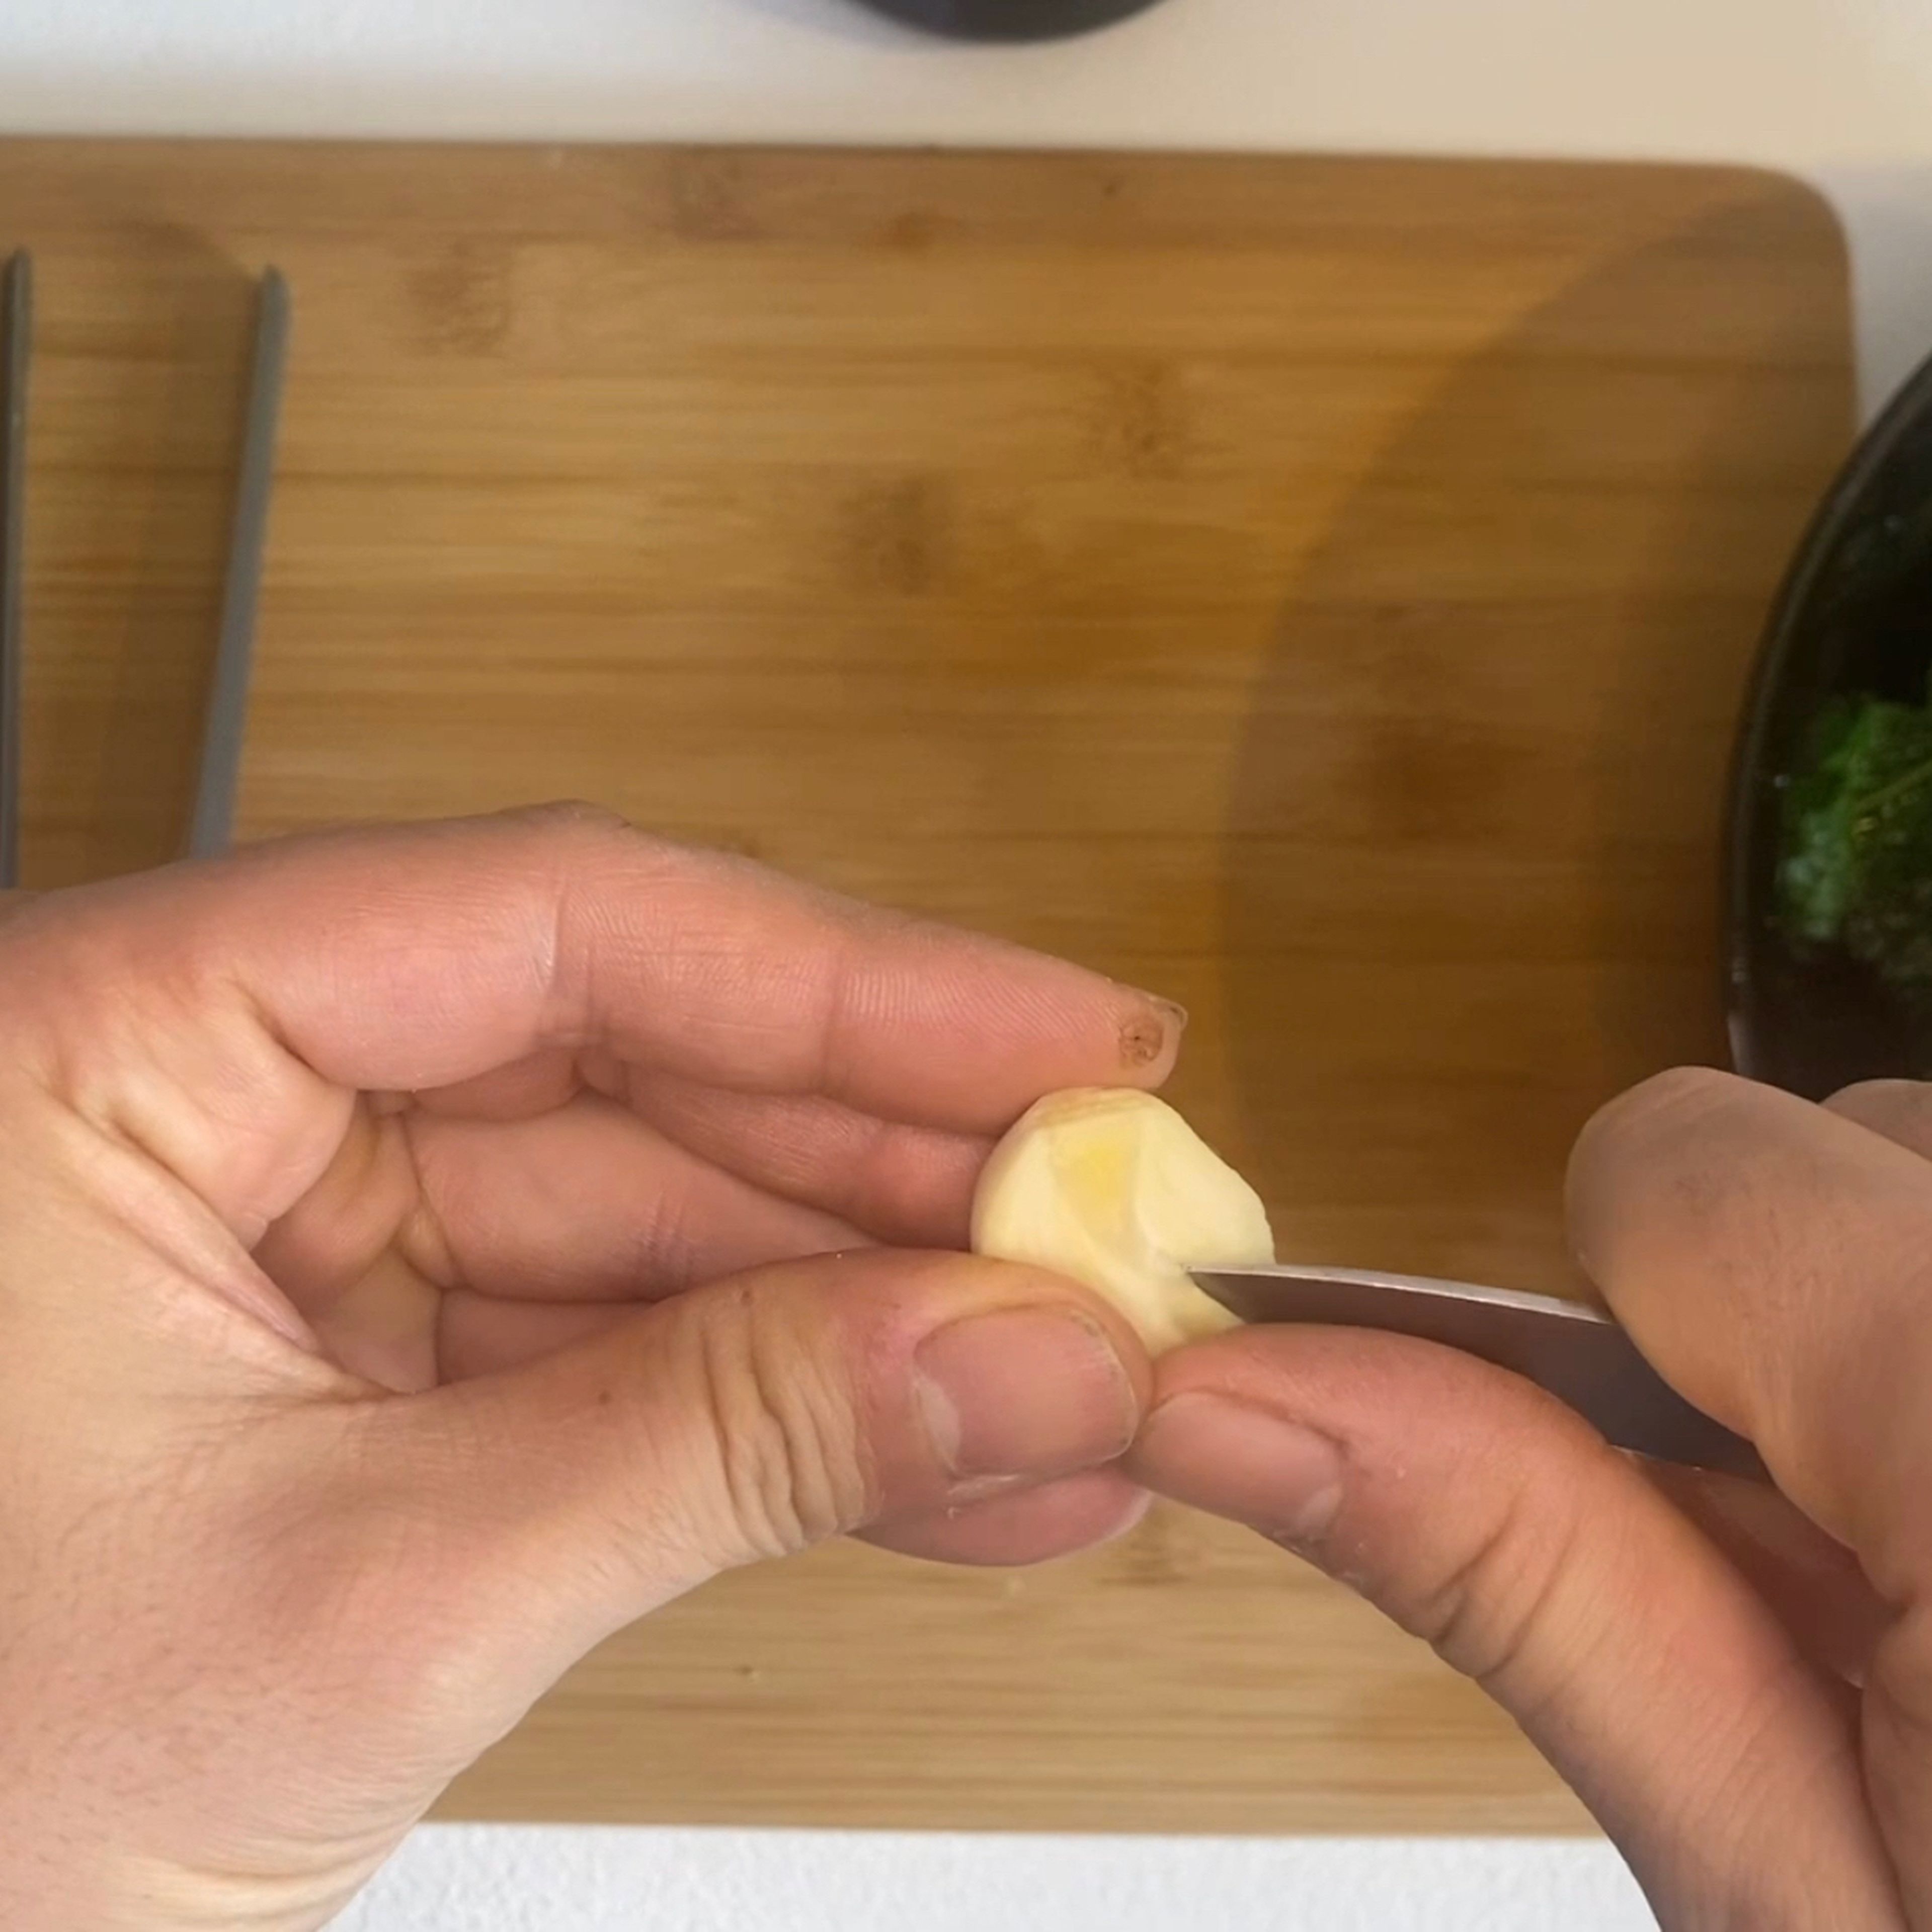 clean the garlic